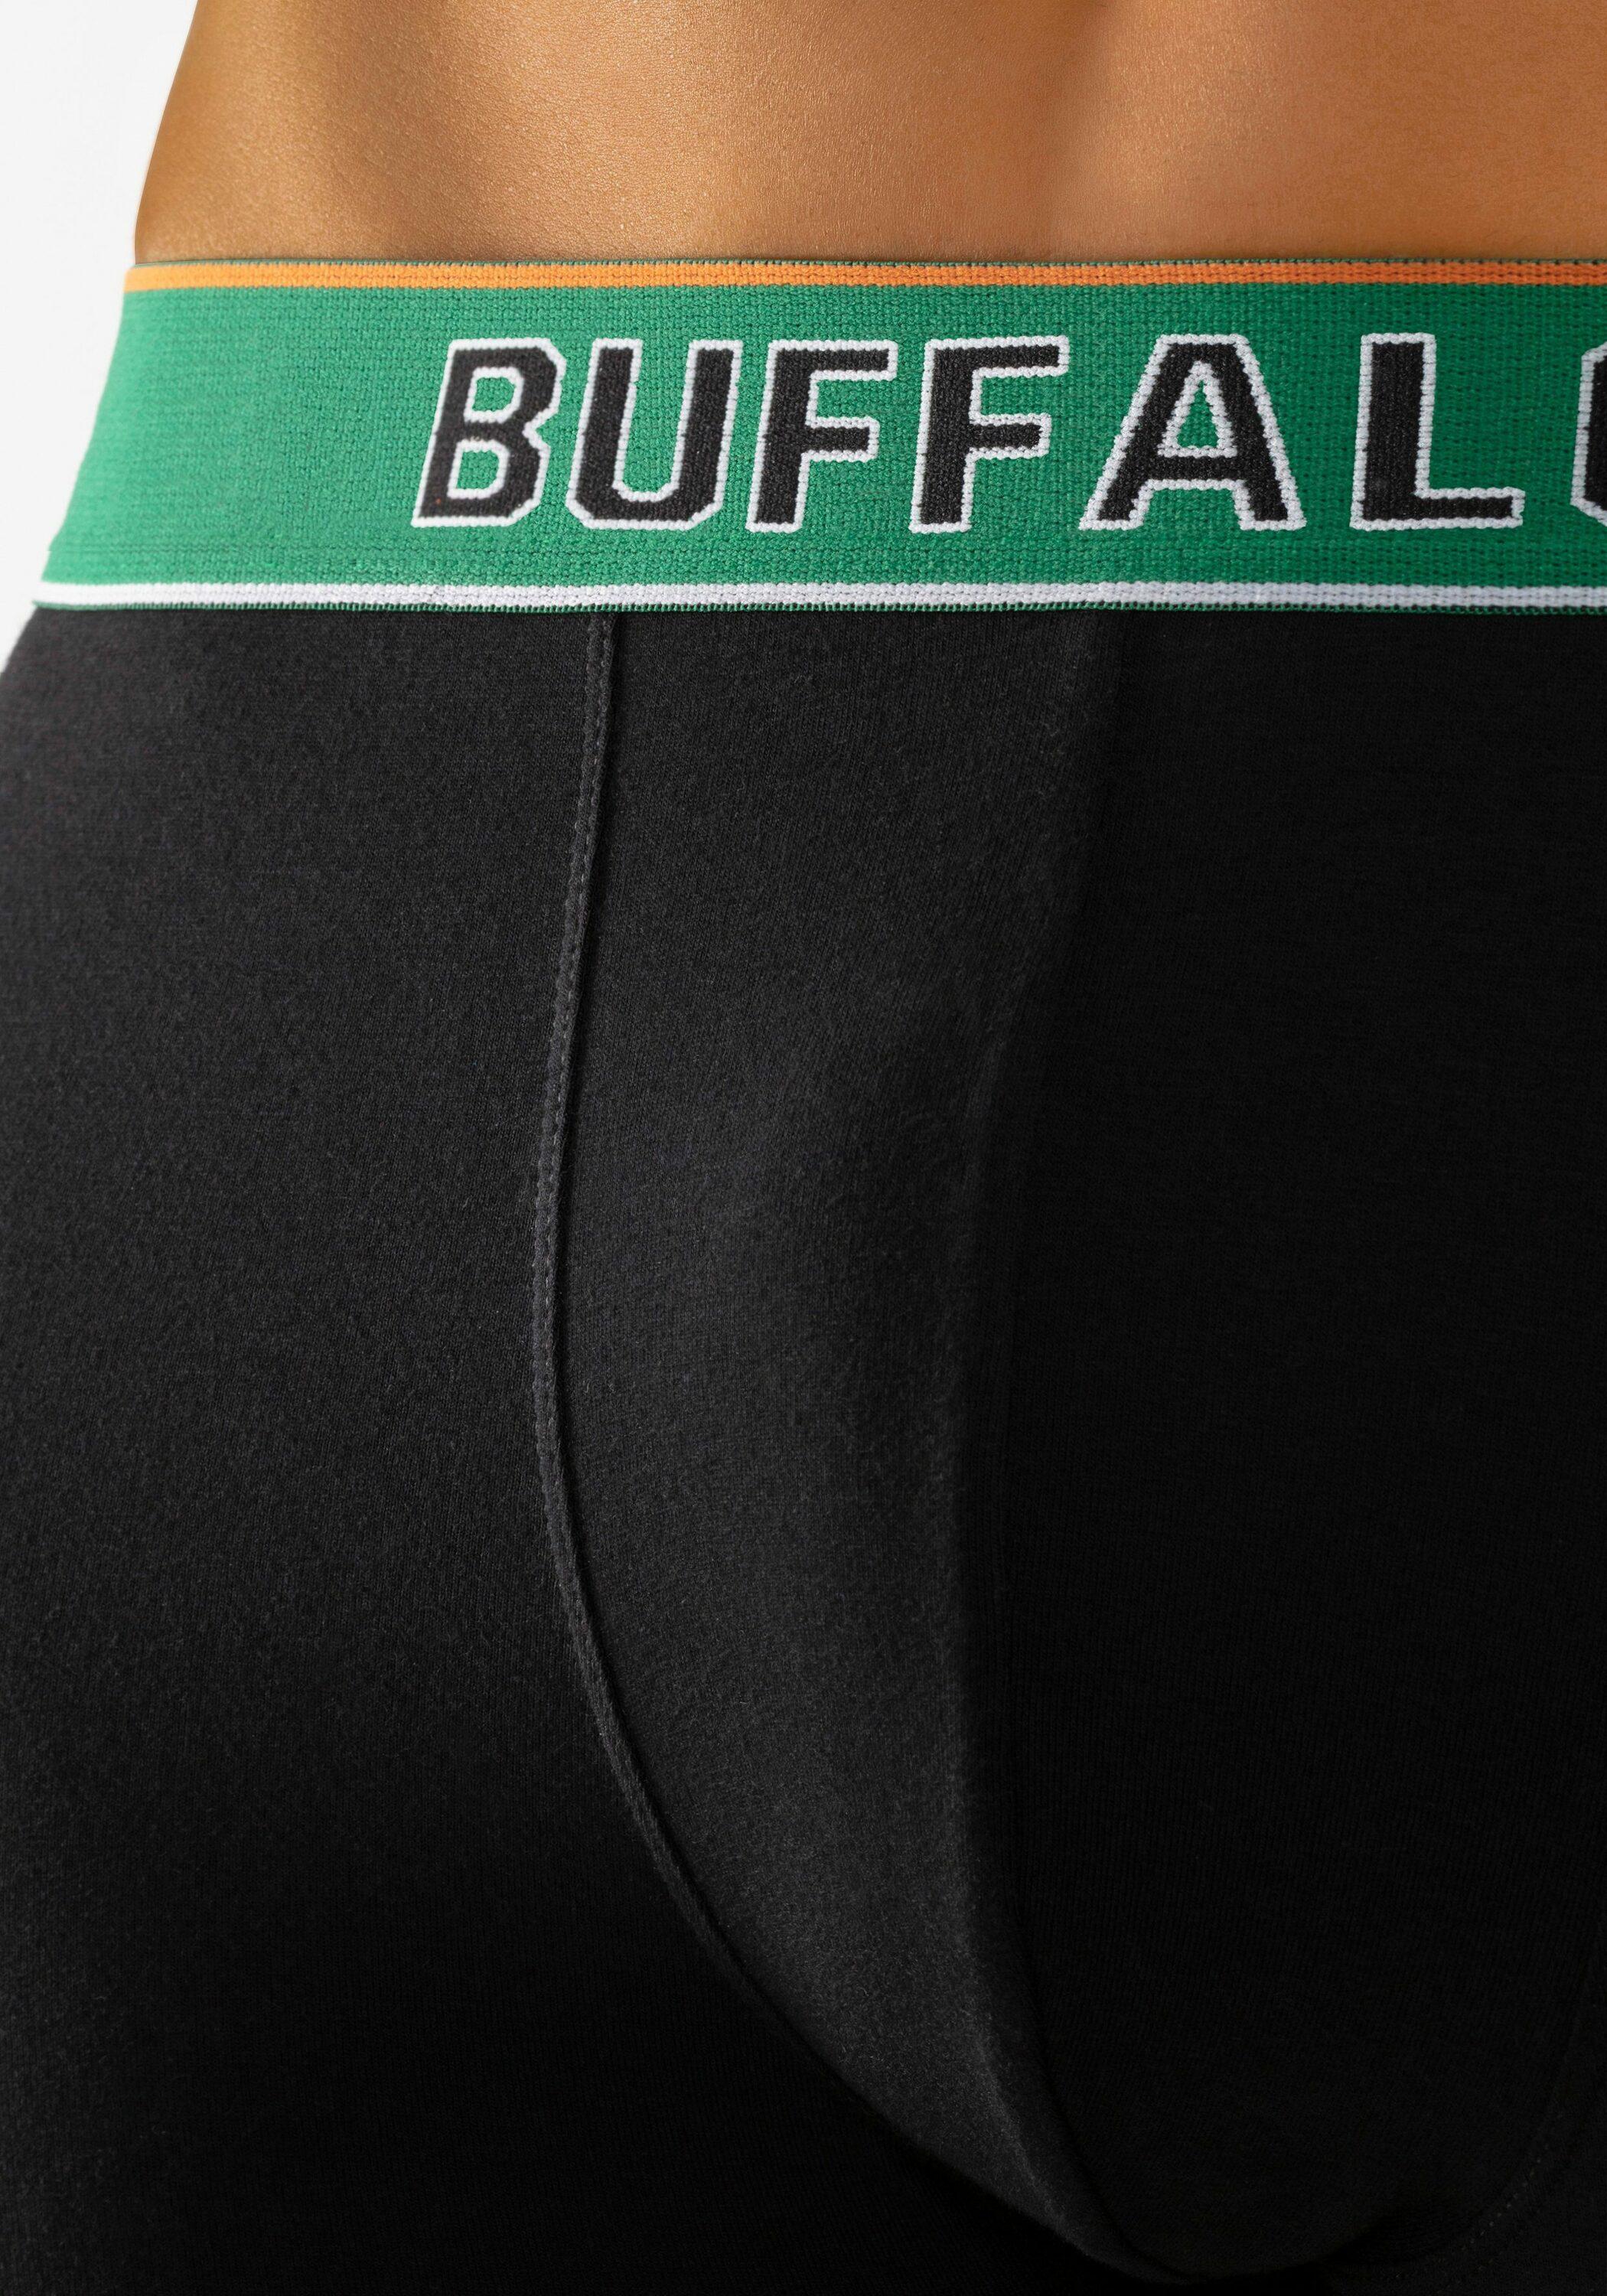 schwarz, Unterhose im SportScheck Buffalo schwarz-grün Online von Herren Shop kaufen schwarz-navy,